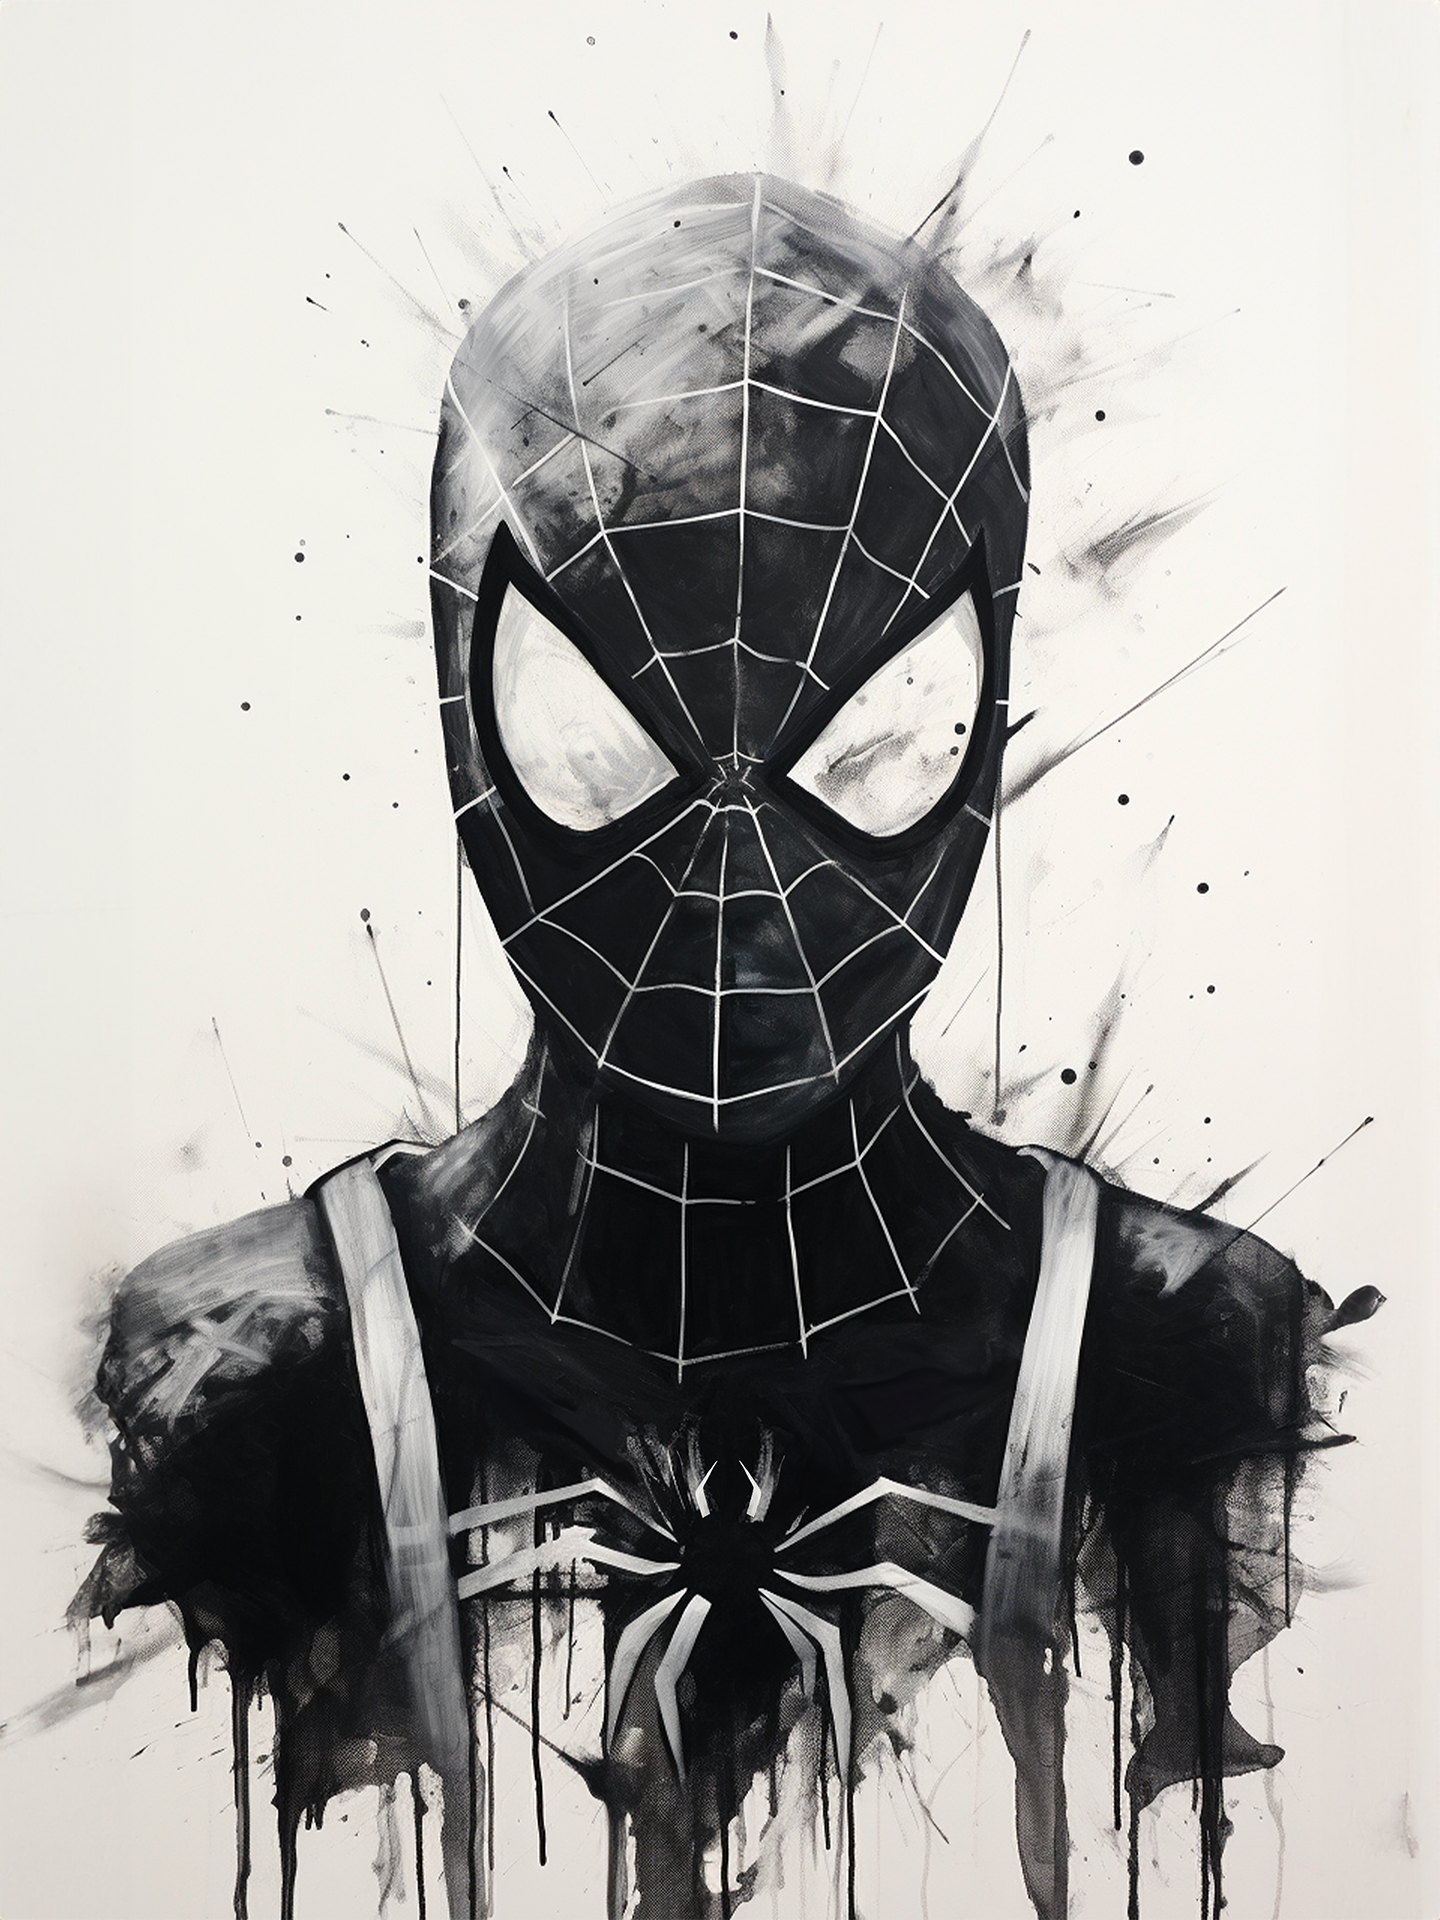 Ce tableau en noir et blanc dépeint une représentation artistique abstraite de Spider-Man avec des coulures d'encre dramatiques qui suggèrent du mouvement ou une désintégration.